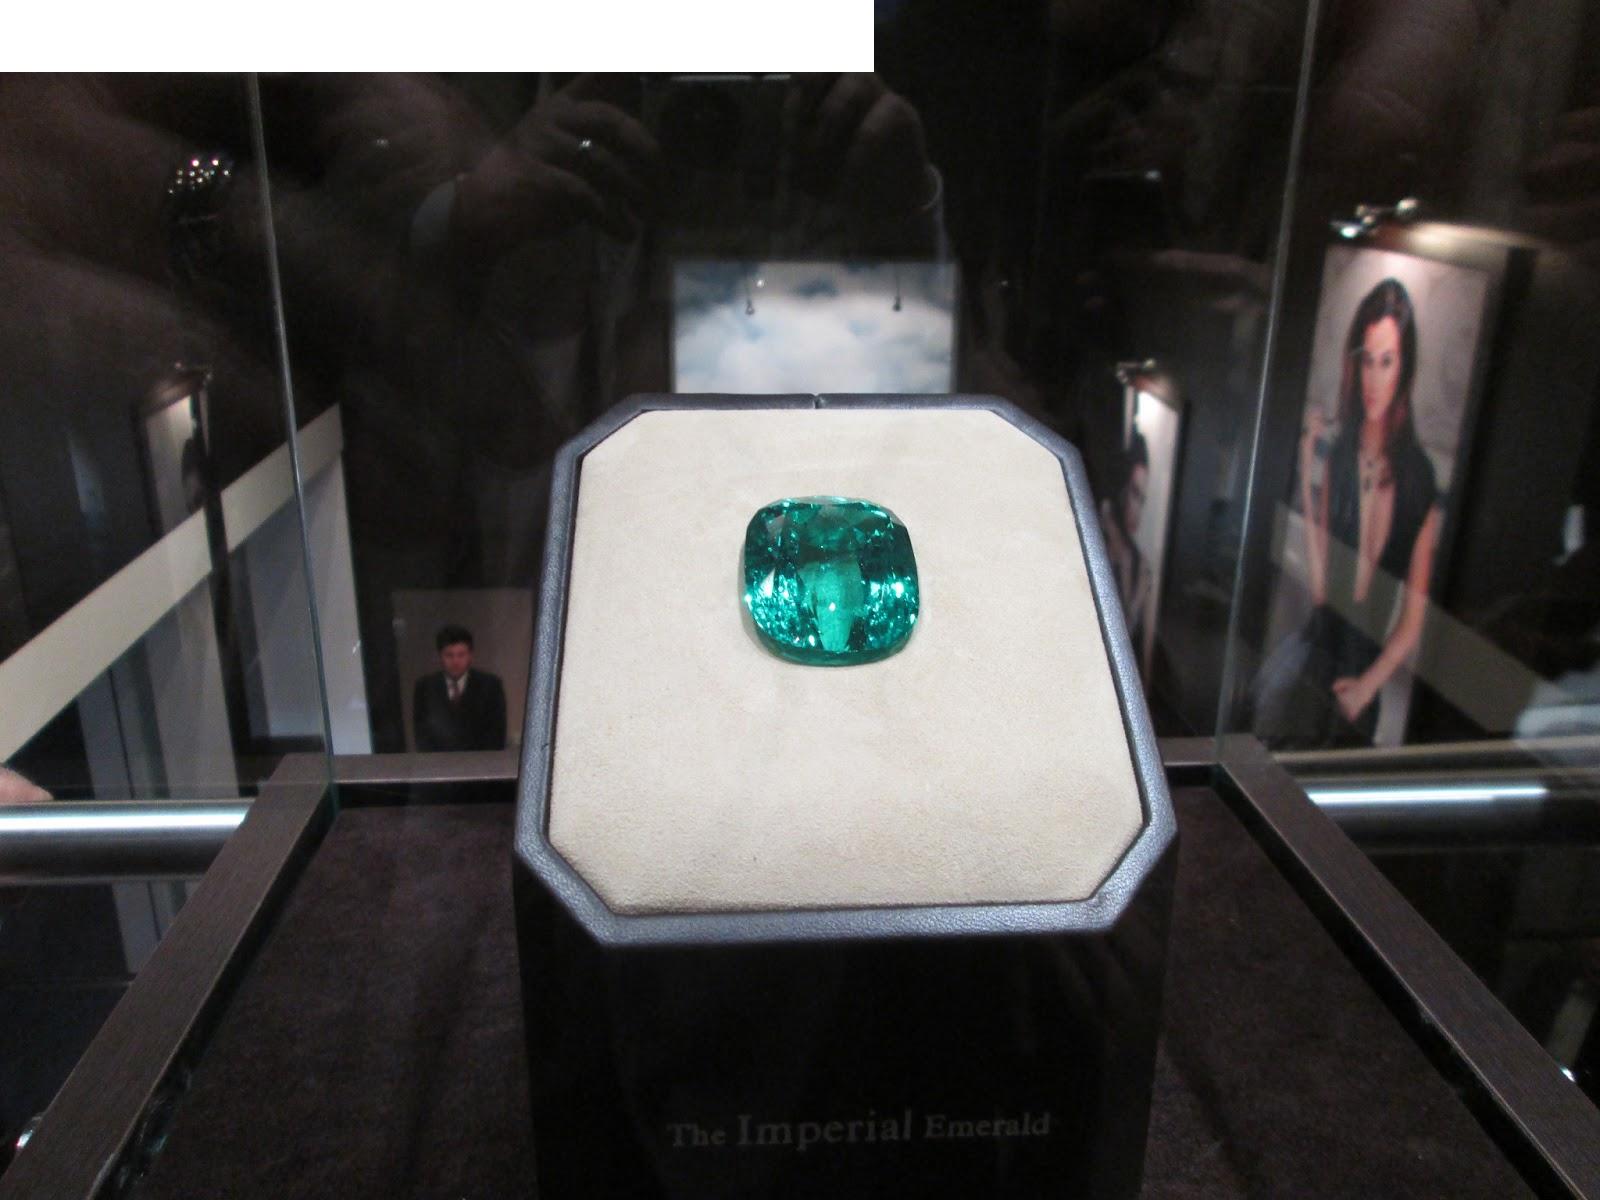 "Imperial Emerald" an 206 Karat